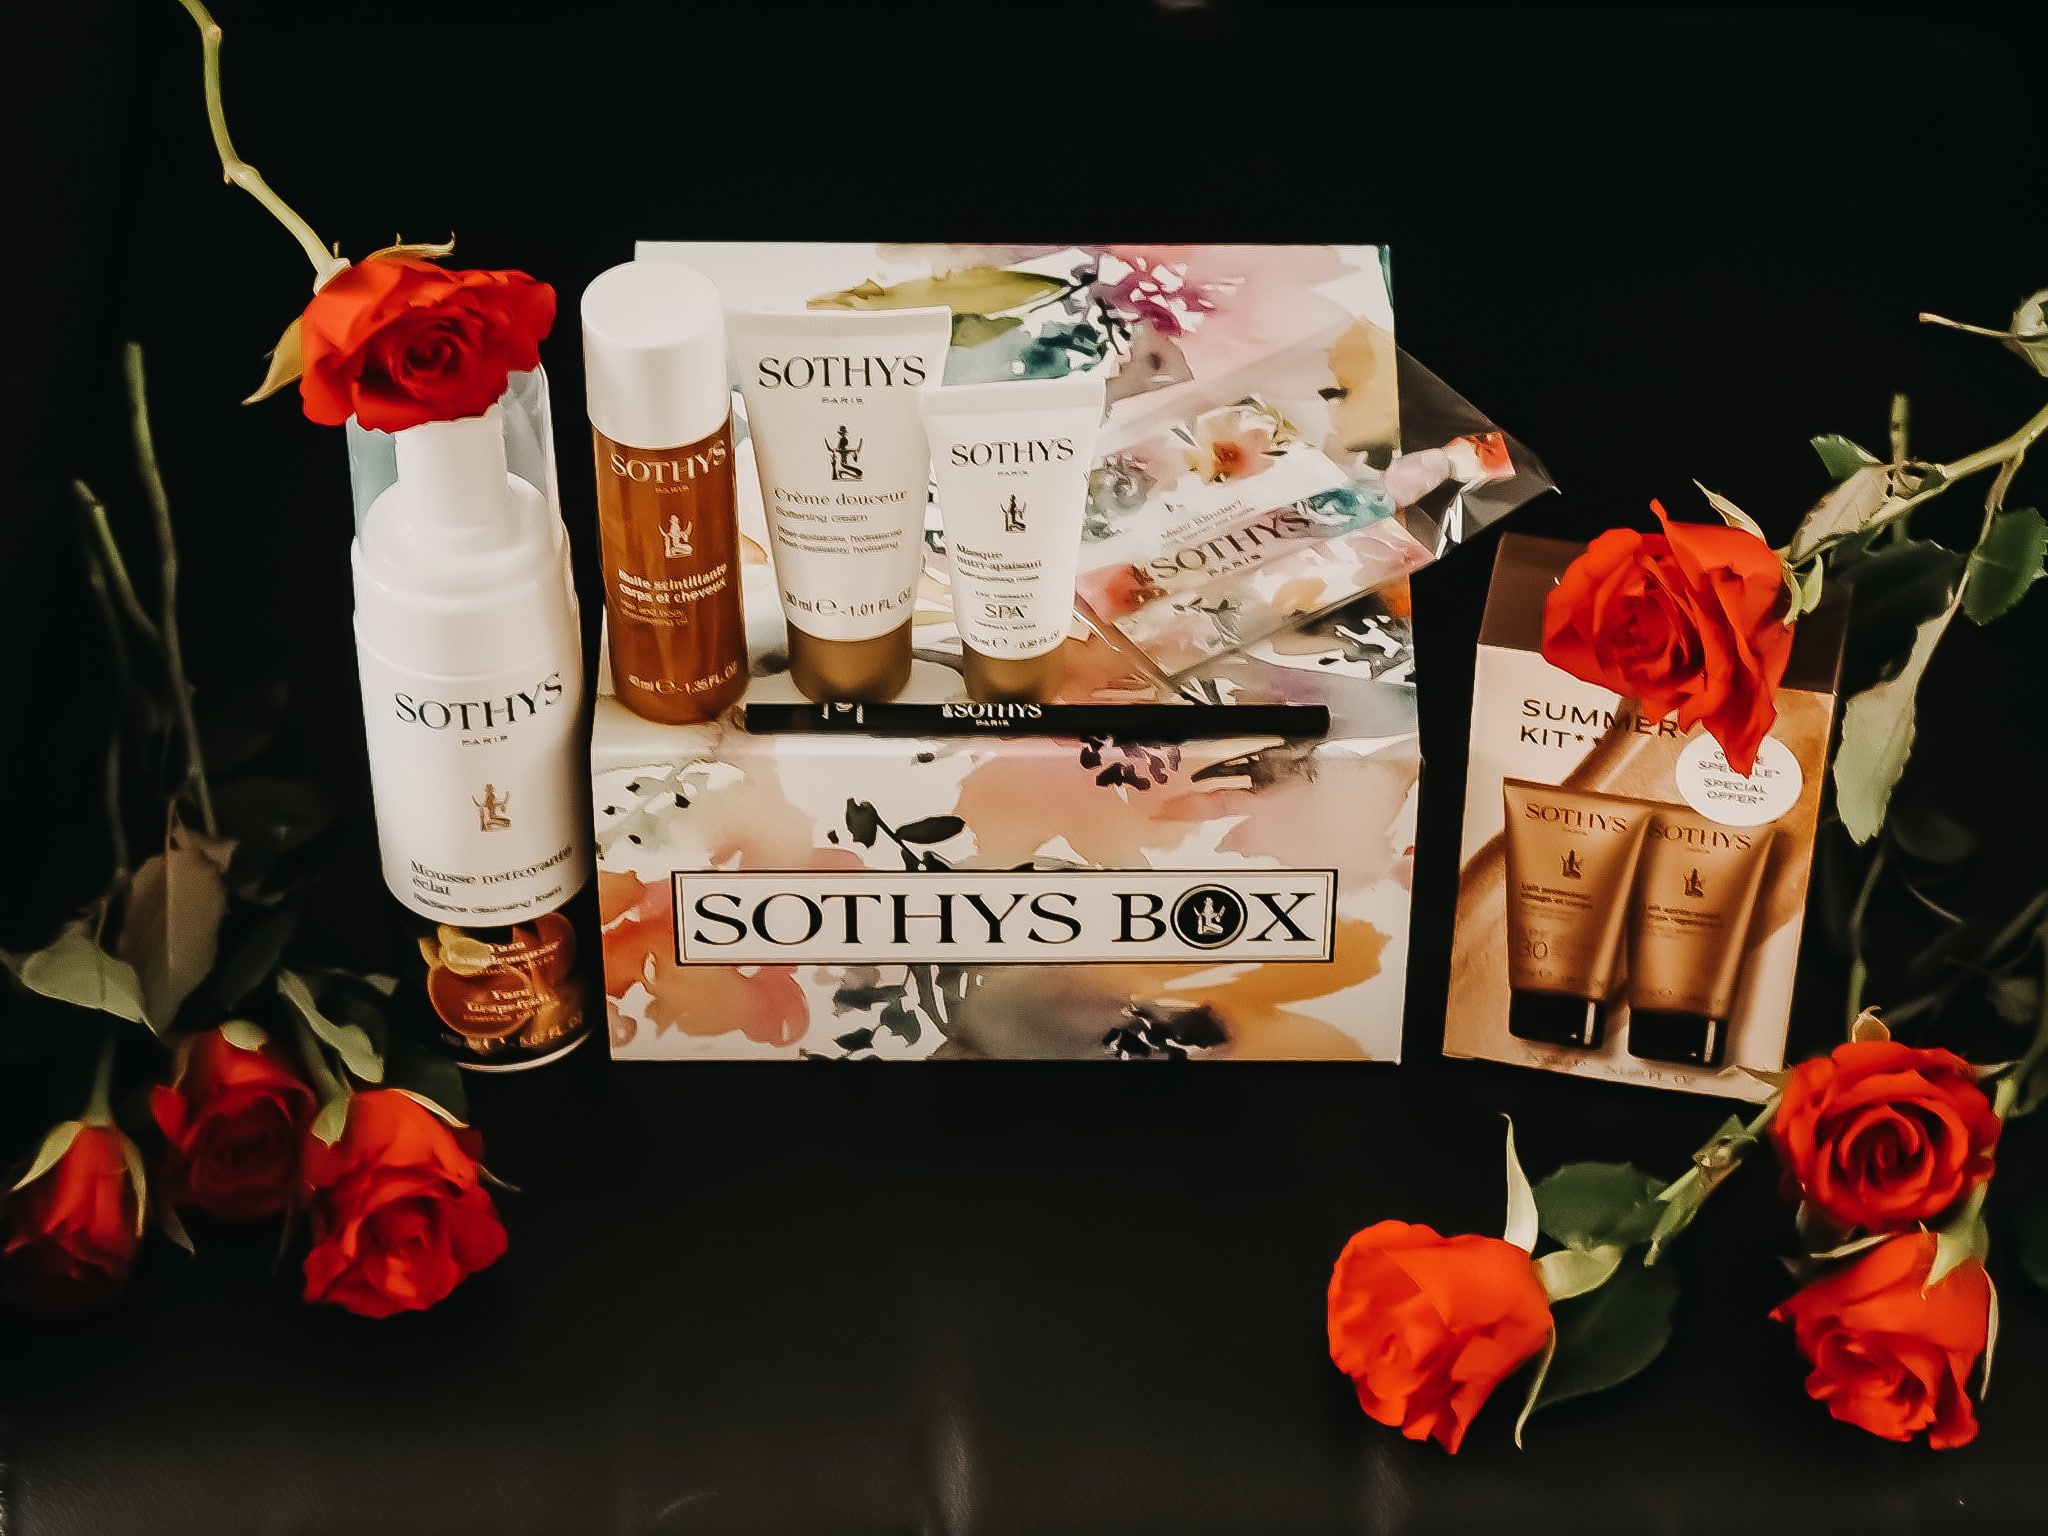 Seit dem 3. Juni gibt es die beliebte Sothys Box Summer-Edition 2019 mit Highlights. Alle enthaltenen Produkte HIER auf dem Beauty Blog und 5 € Rabatt Code.